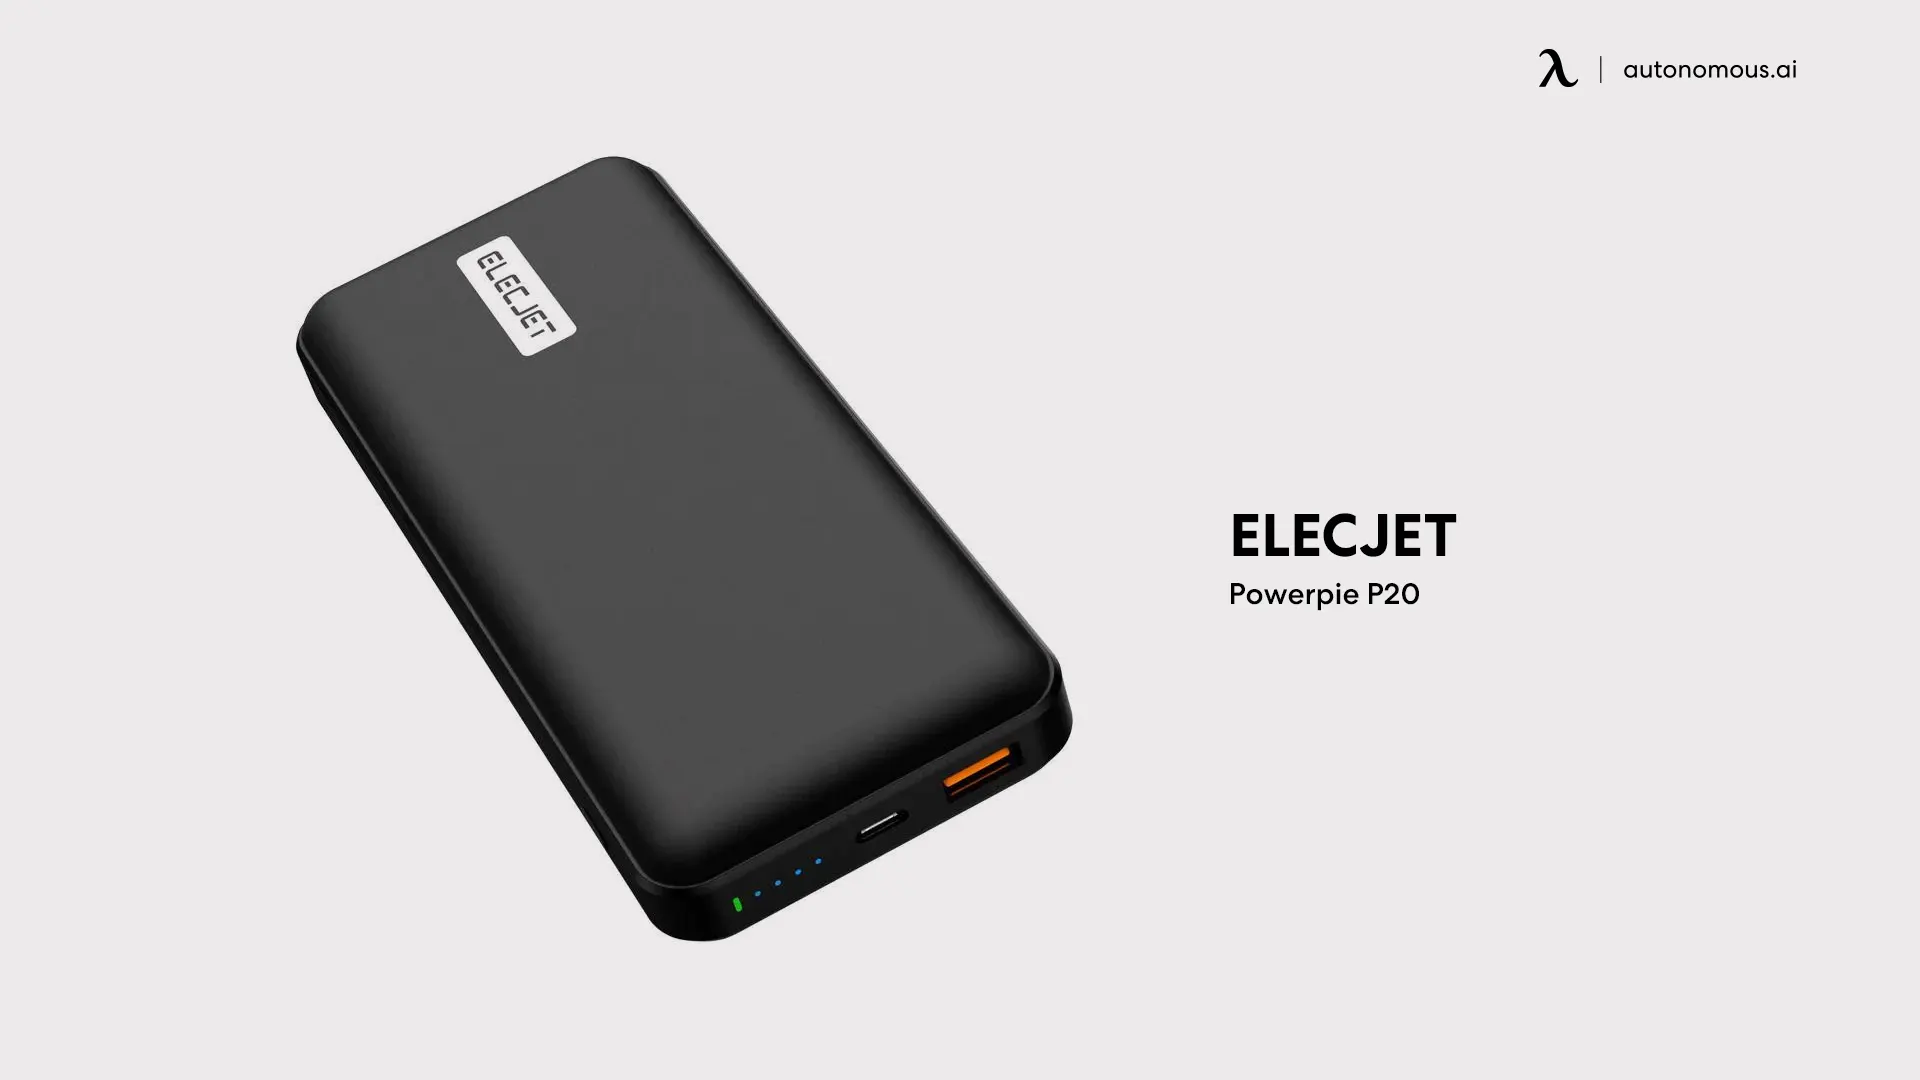 Elecjet Powerpie P20 portable charger